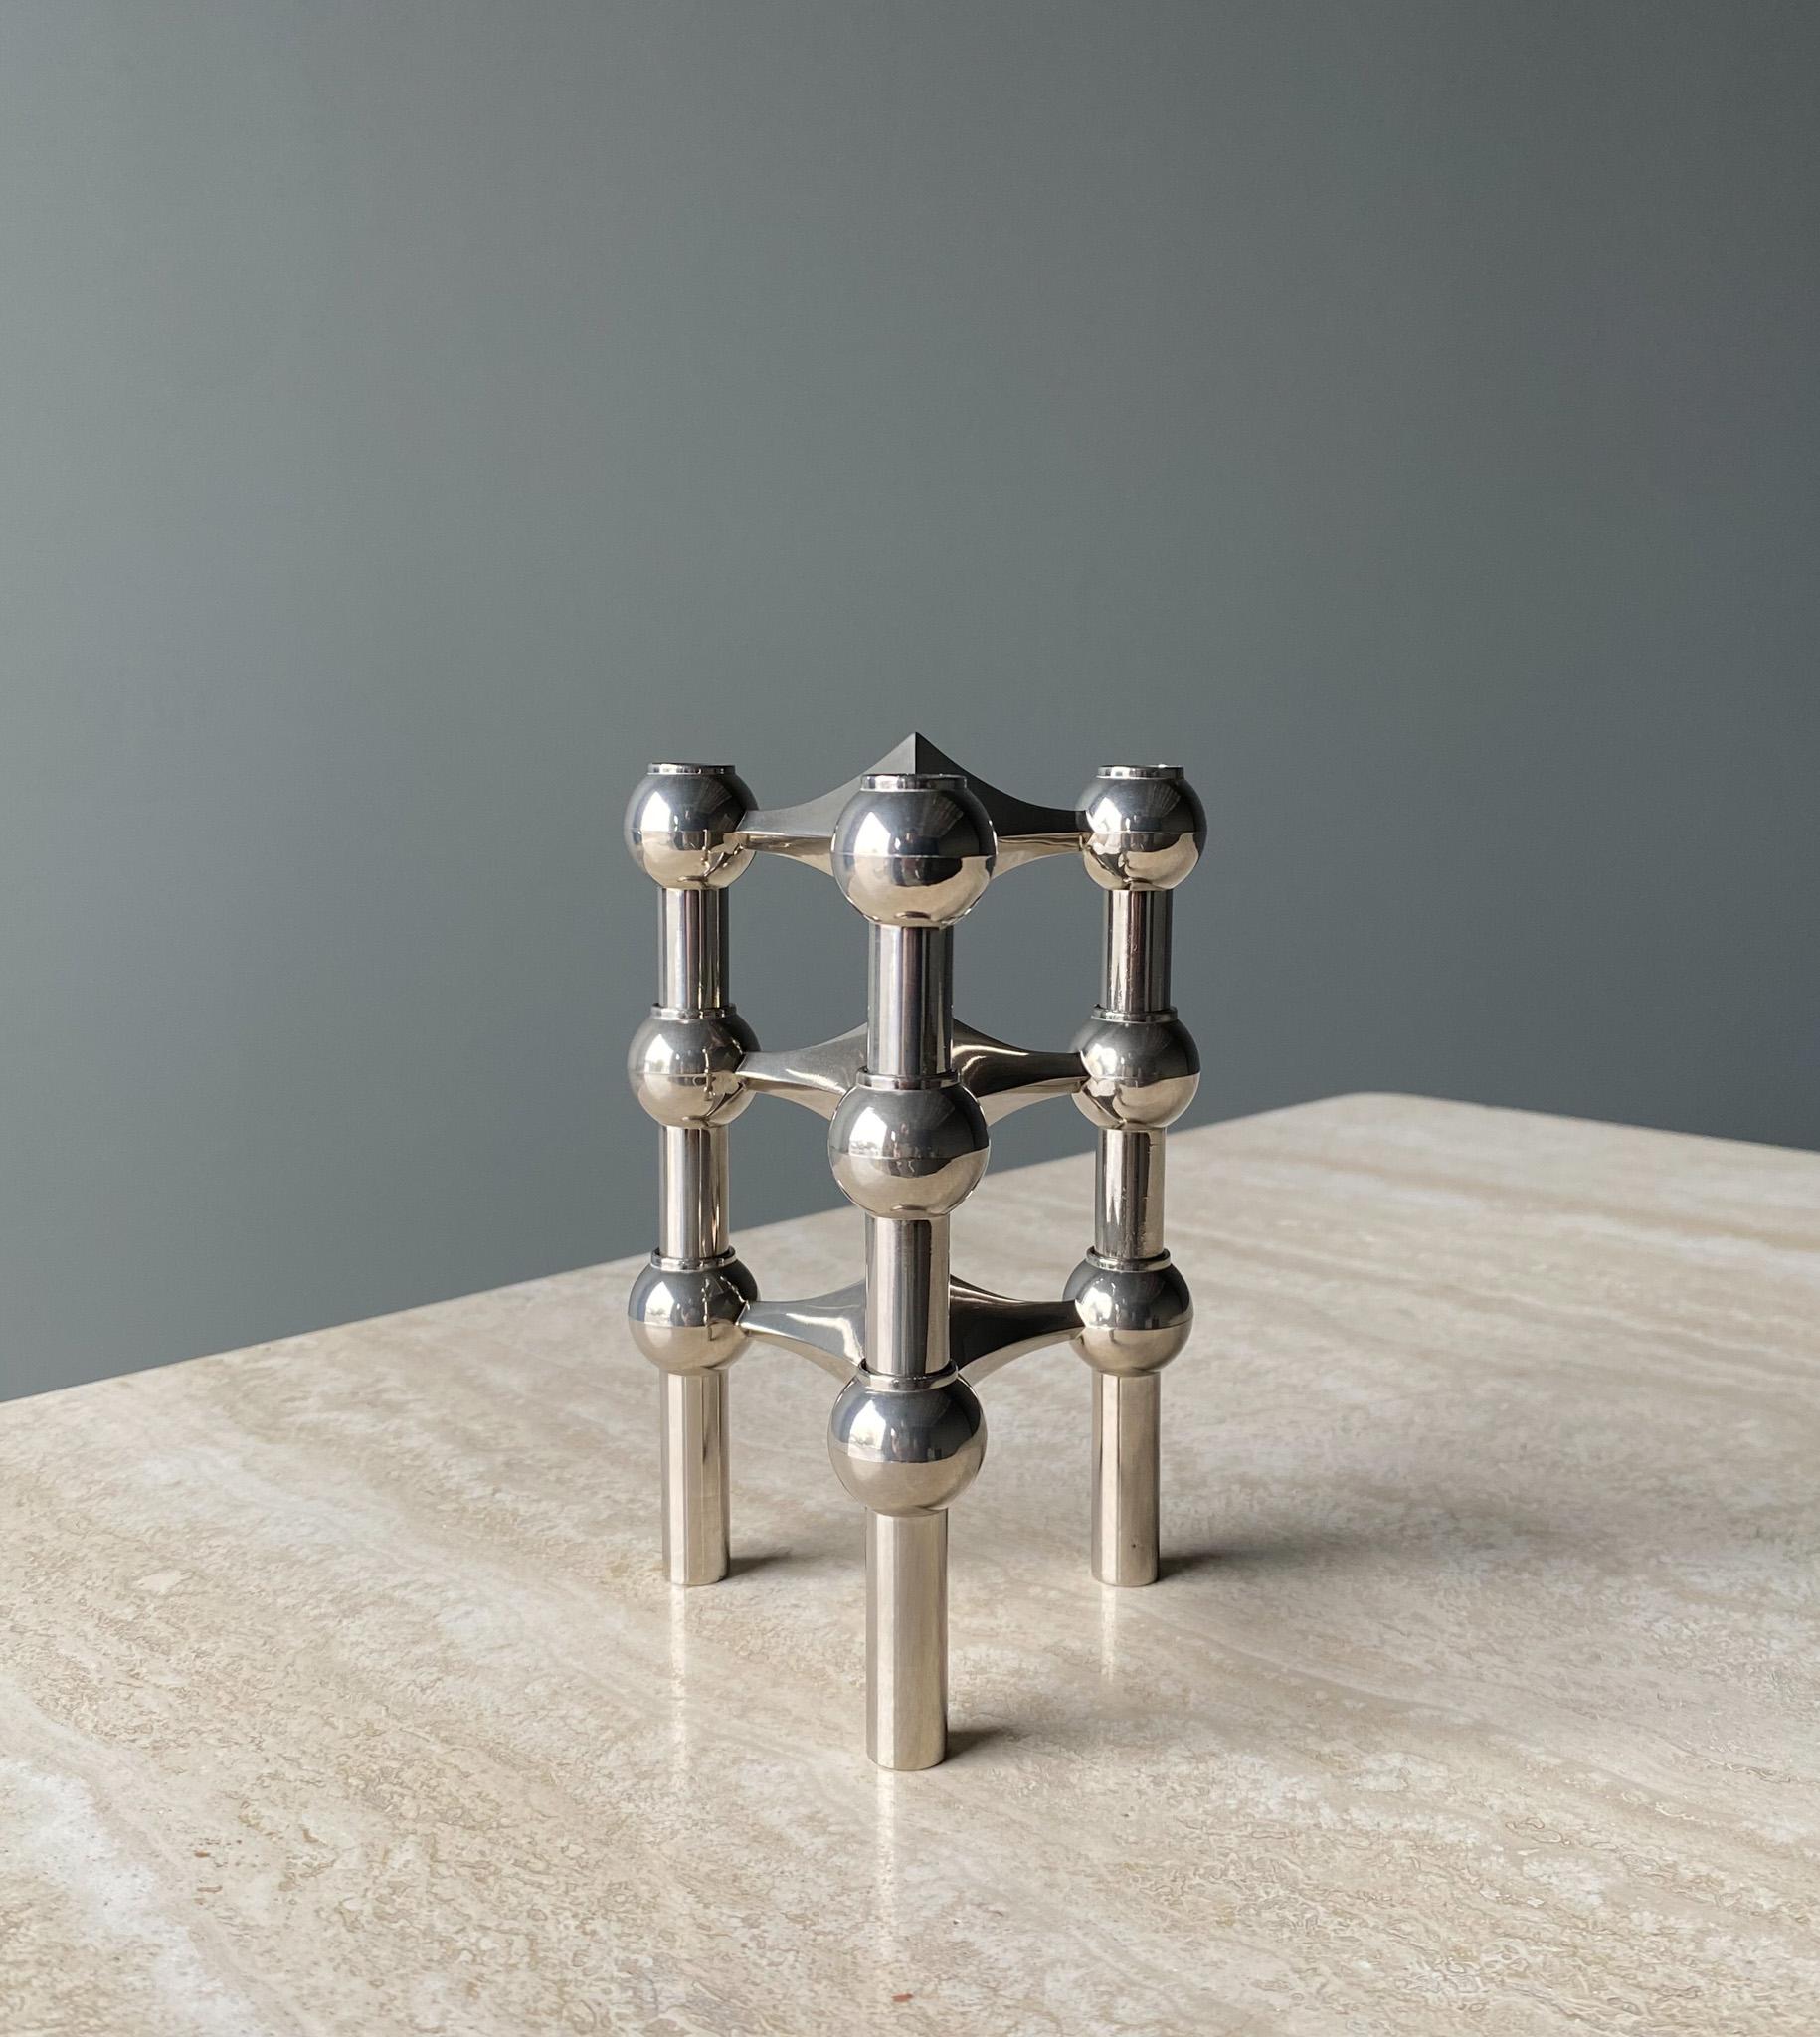 Mid-Century Modern Stoff Nagel Candleholder Designed by Werner Stoff for Metalworker Hans Nagel